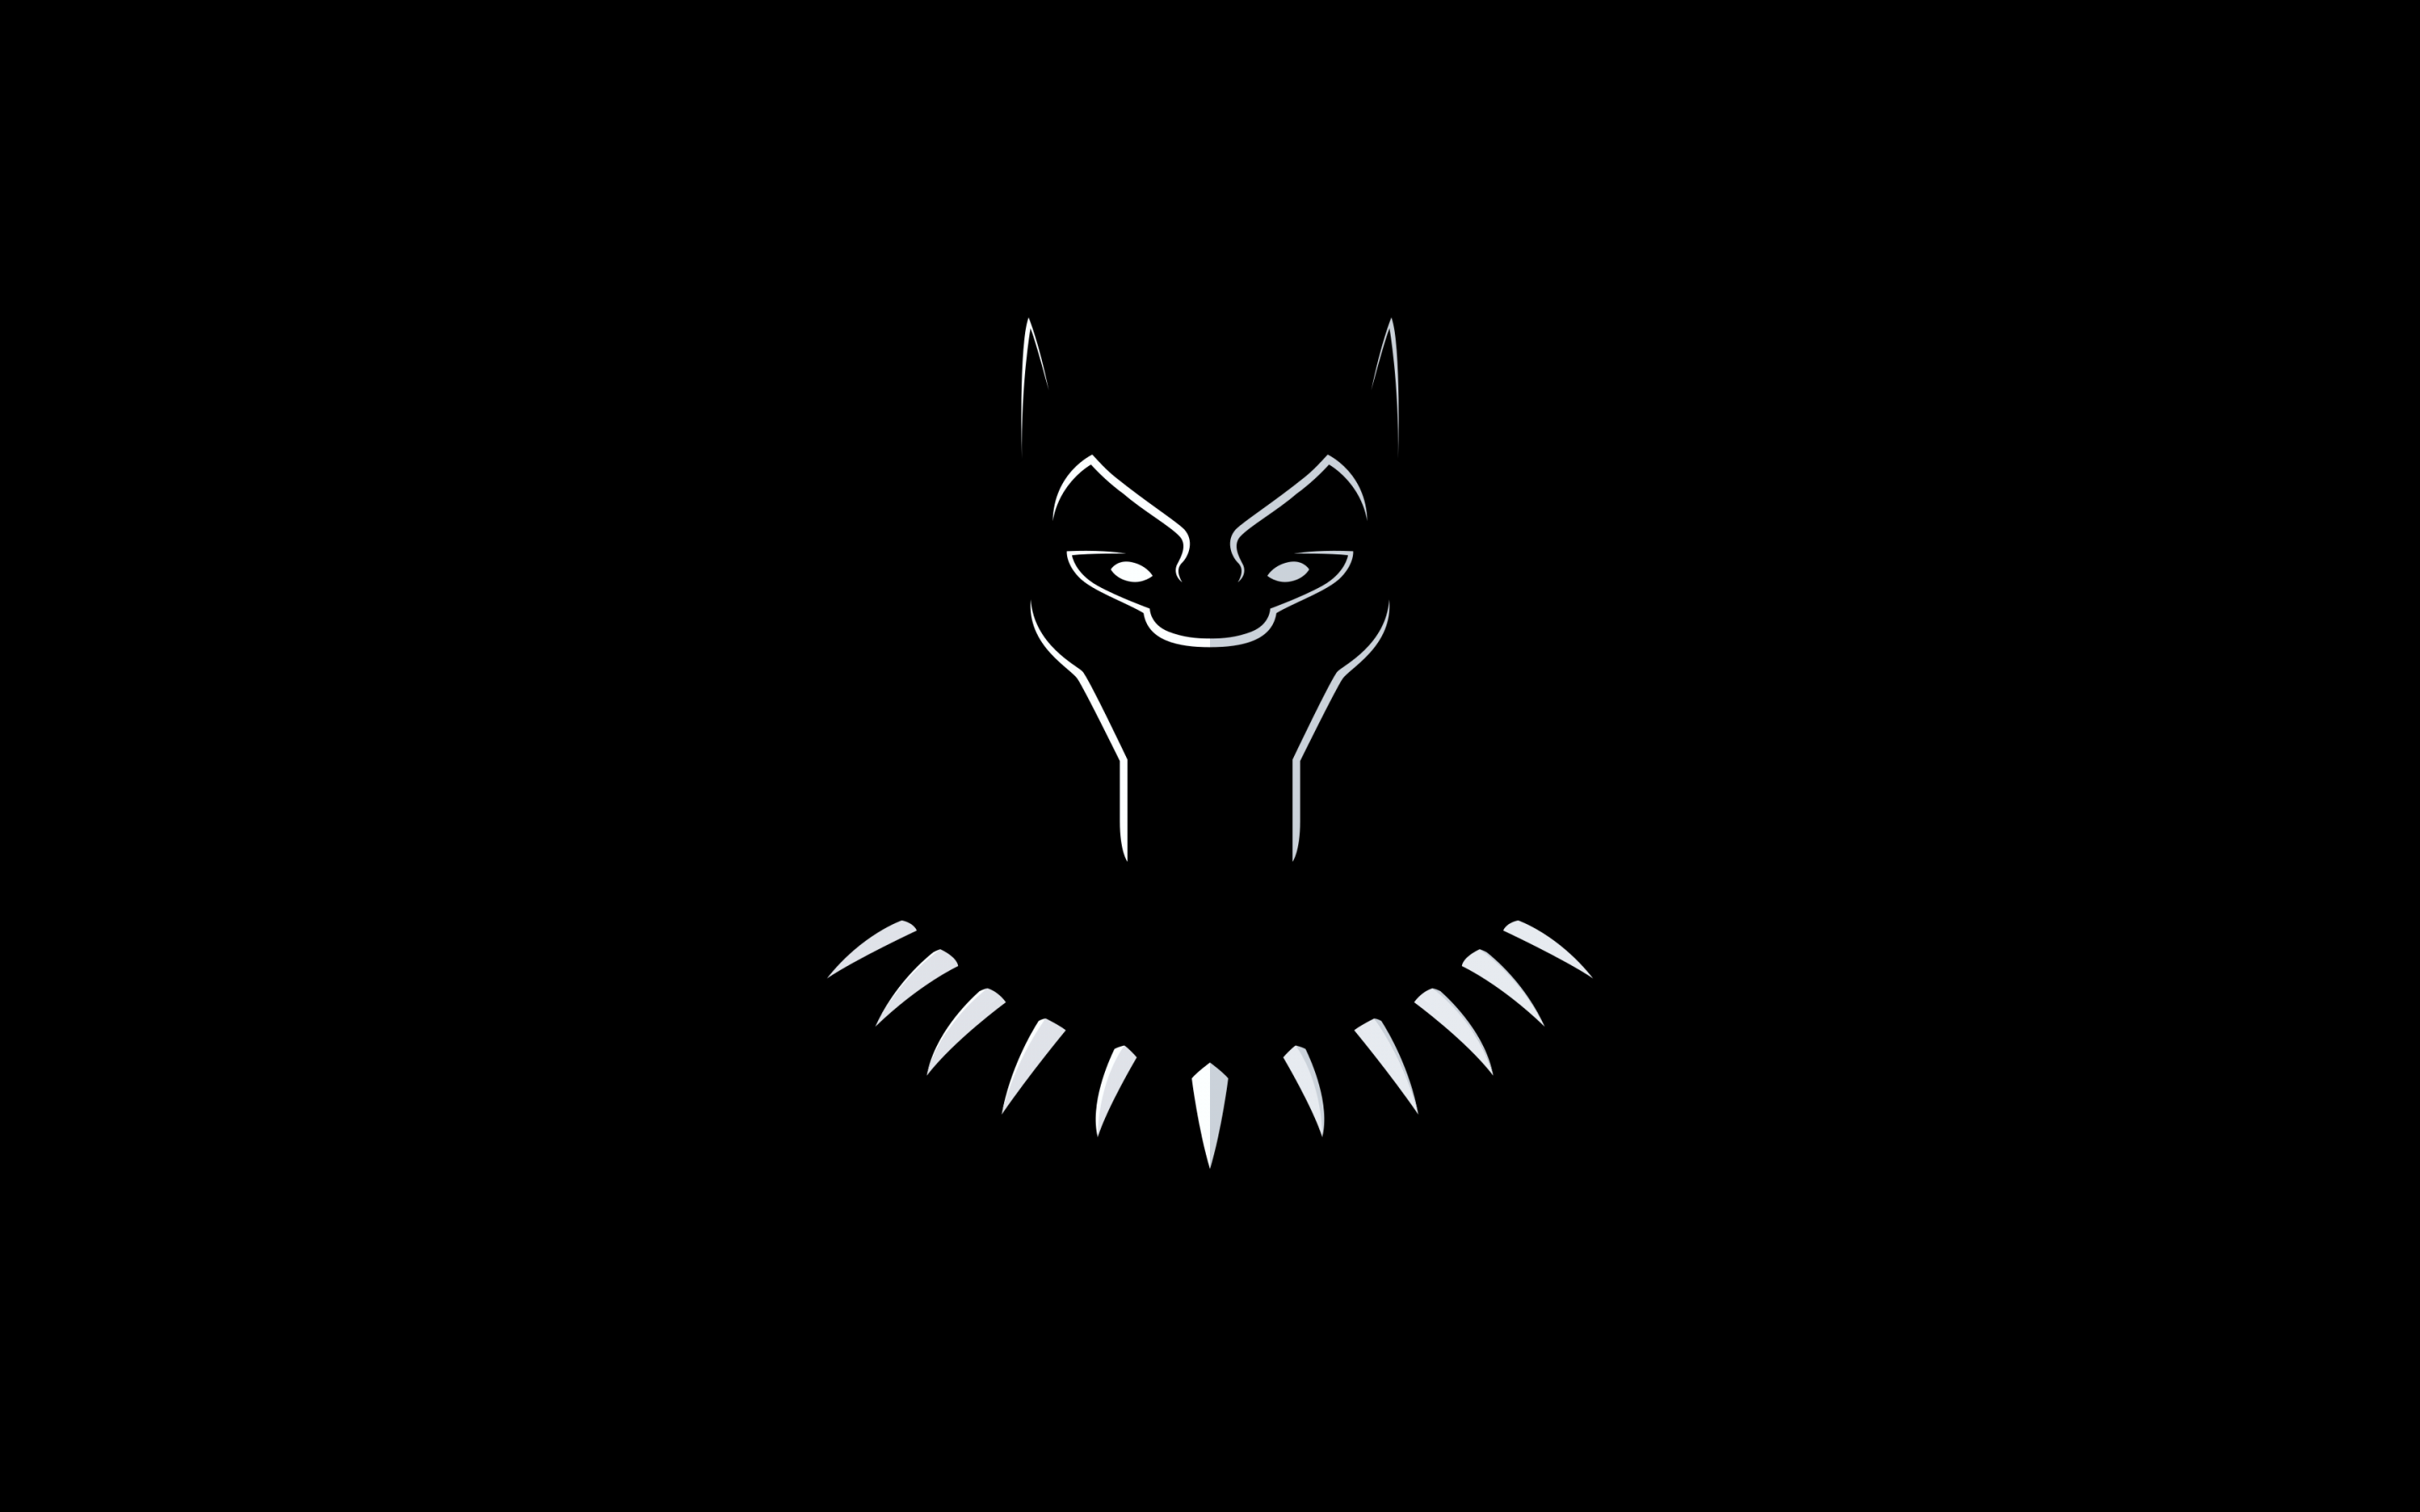 Hình nền Black Panther 4K, Minimal Art, Black/Dark, #2762 sẽ khiến bạn cảm thấy gợi cảm và phong cách. Mang trong mình màu đen vắt nguyệt quế cùng thiết kế tối giản hiện đại, hình ảnh này sẽ tạo nên cái nhìn rất khác biệt cho màn hình máy tính của bạn. Khám phá ngay tác phẩm nghệ thuật này để cảm nhận!